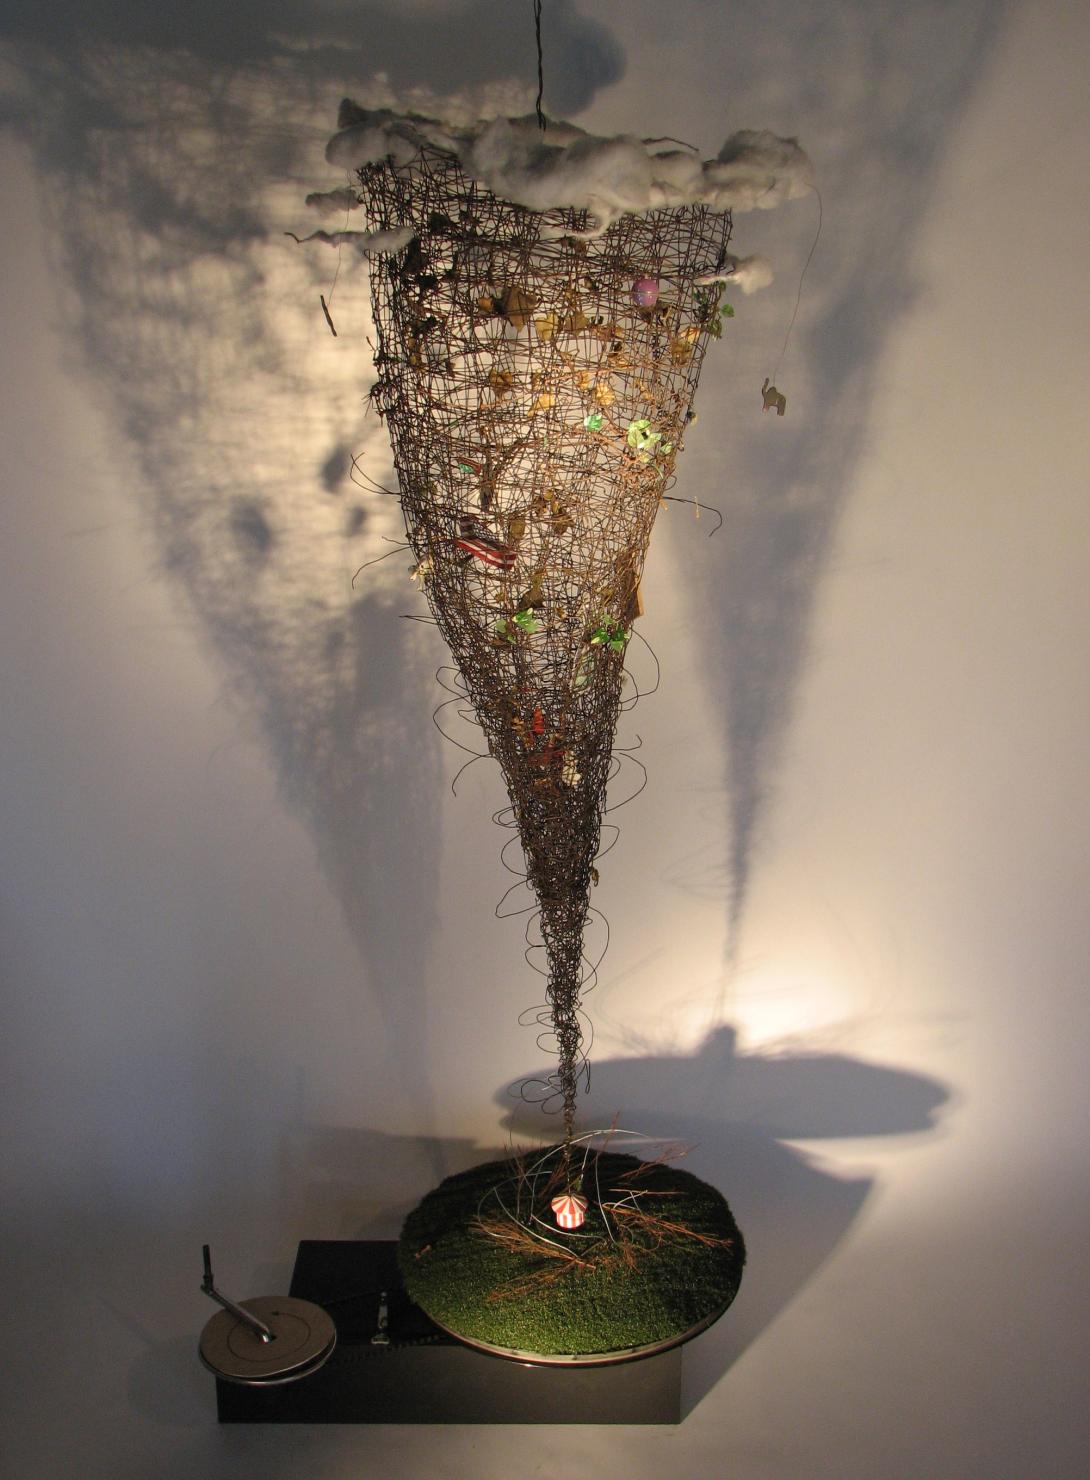 Sculpture - "Tornado" by Melissa Daubert